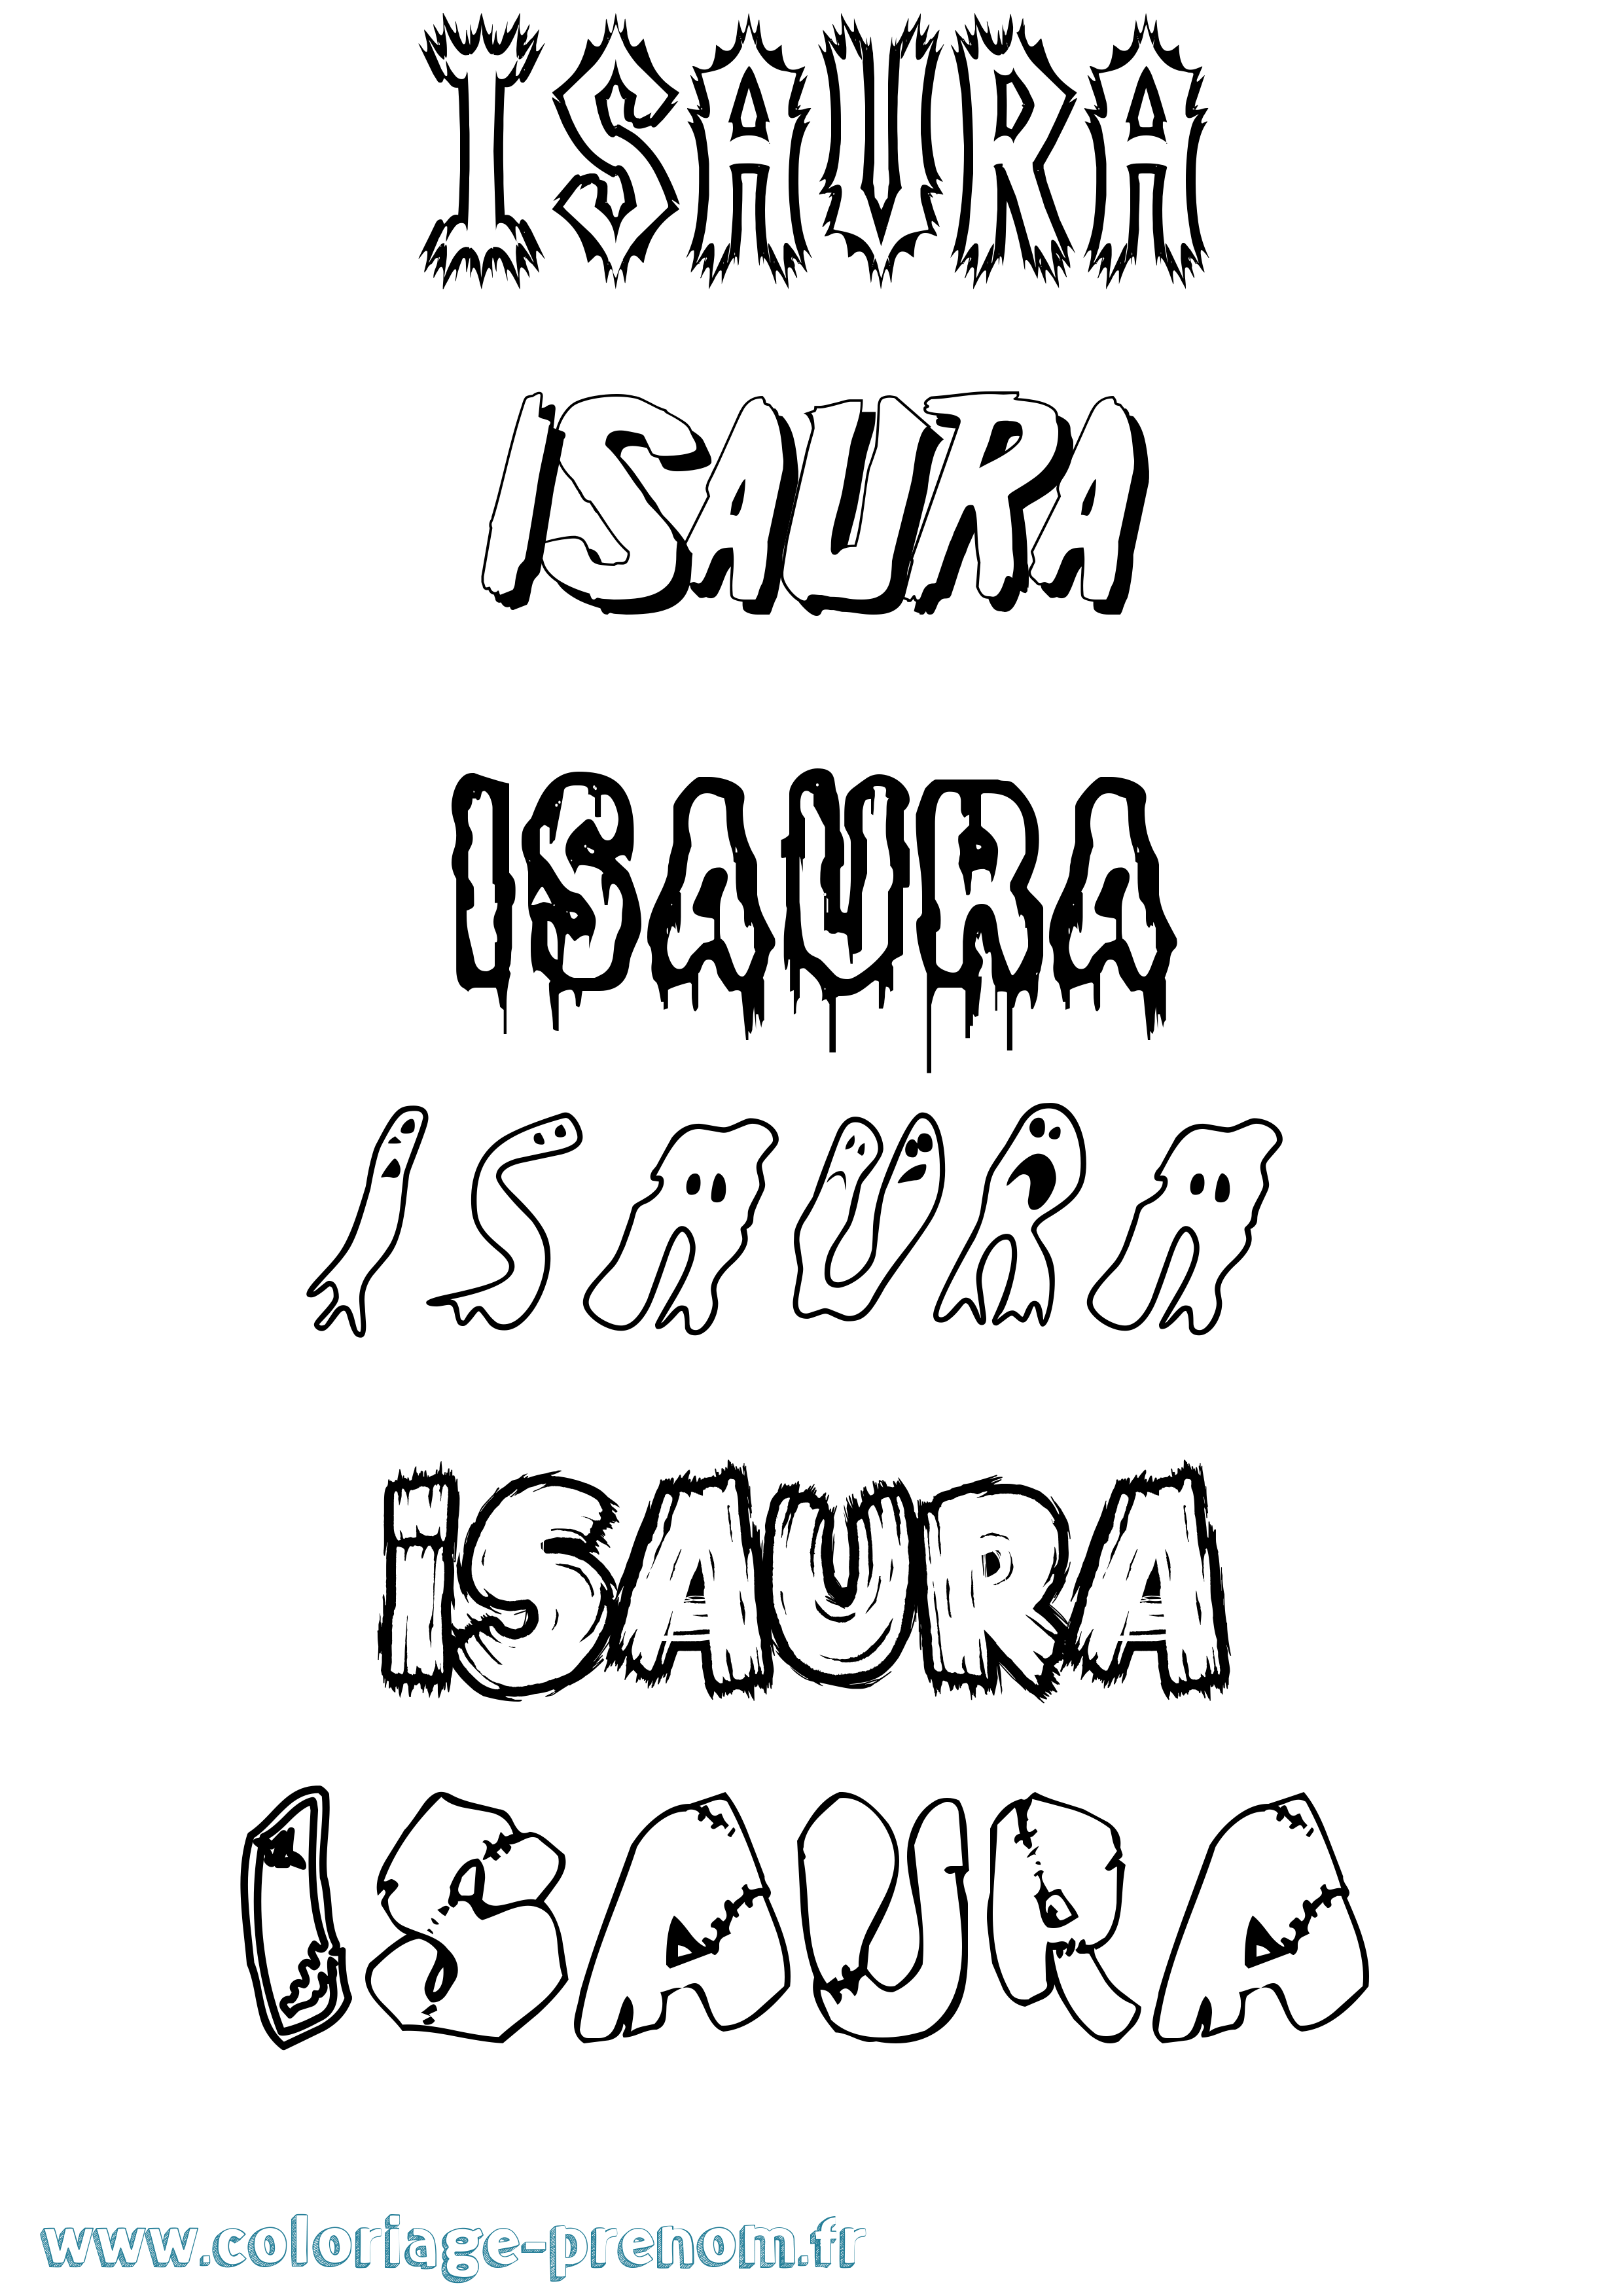 Coloriage prénom Isaura Frisson